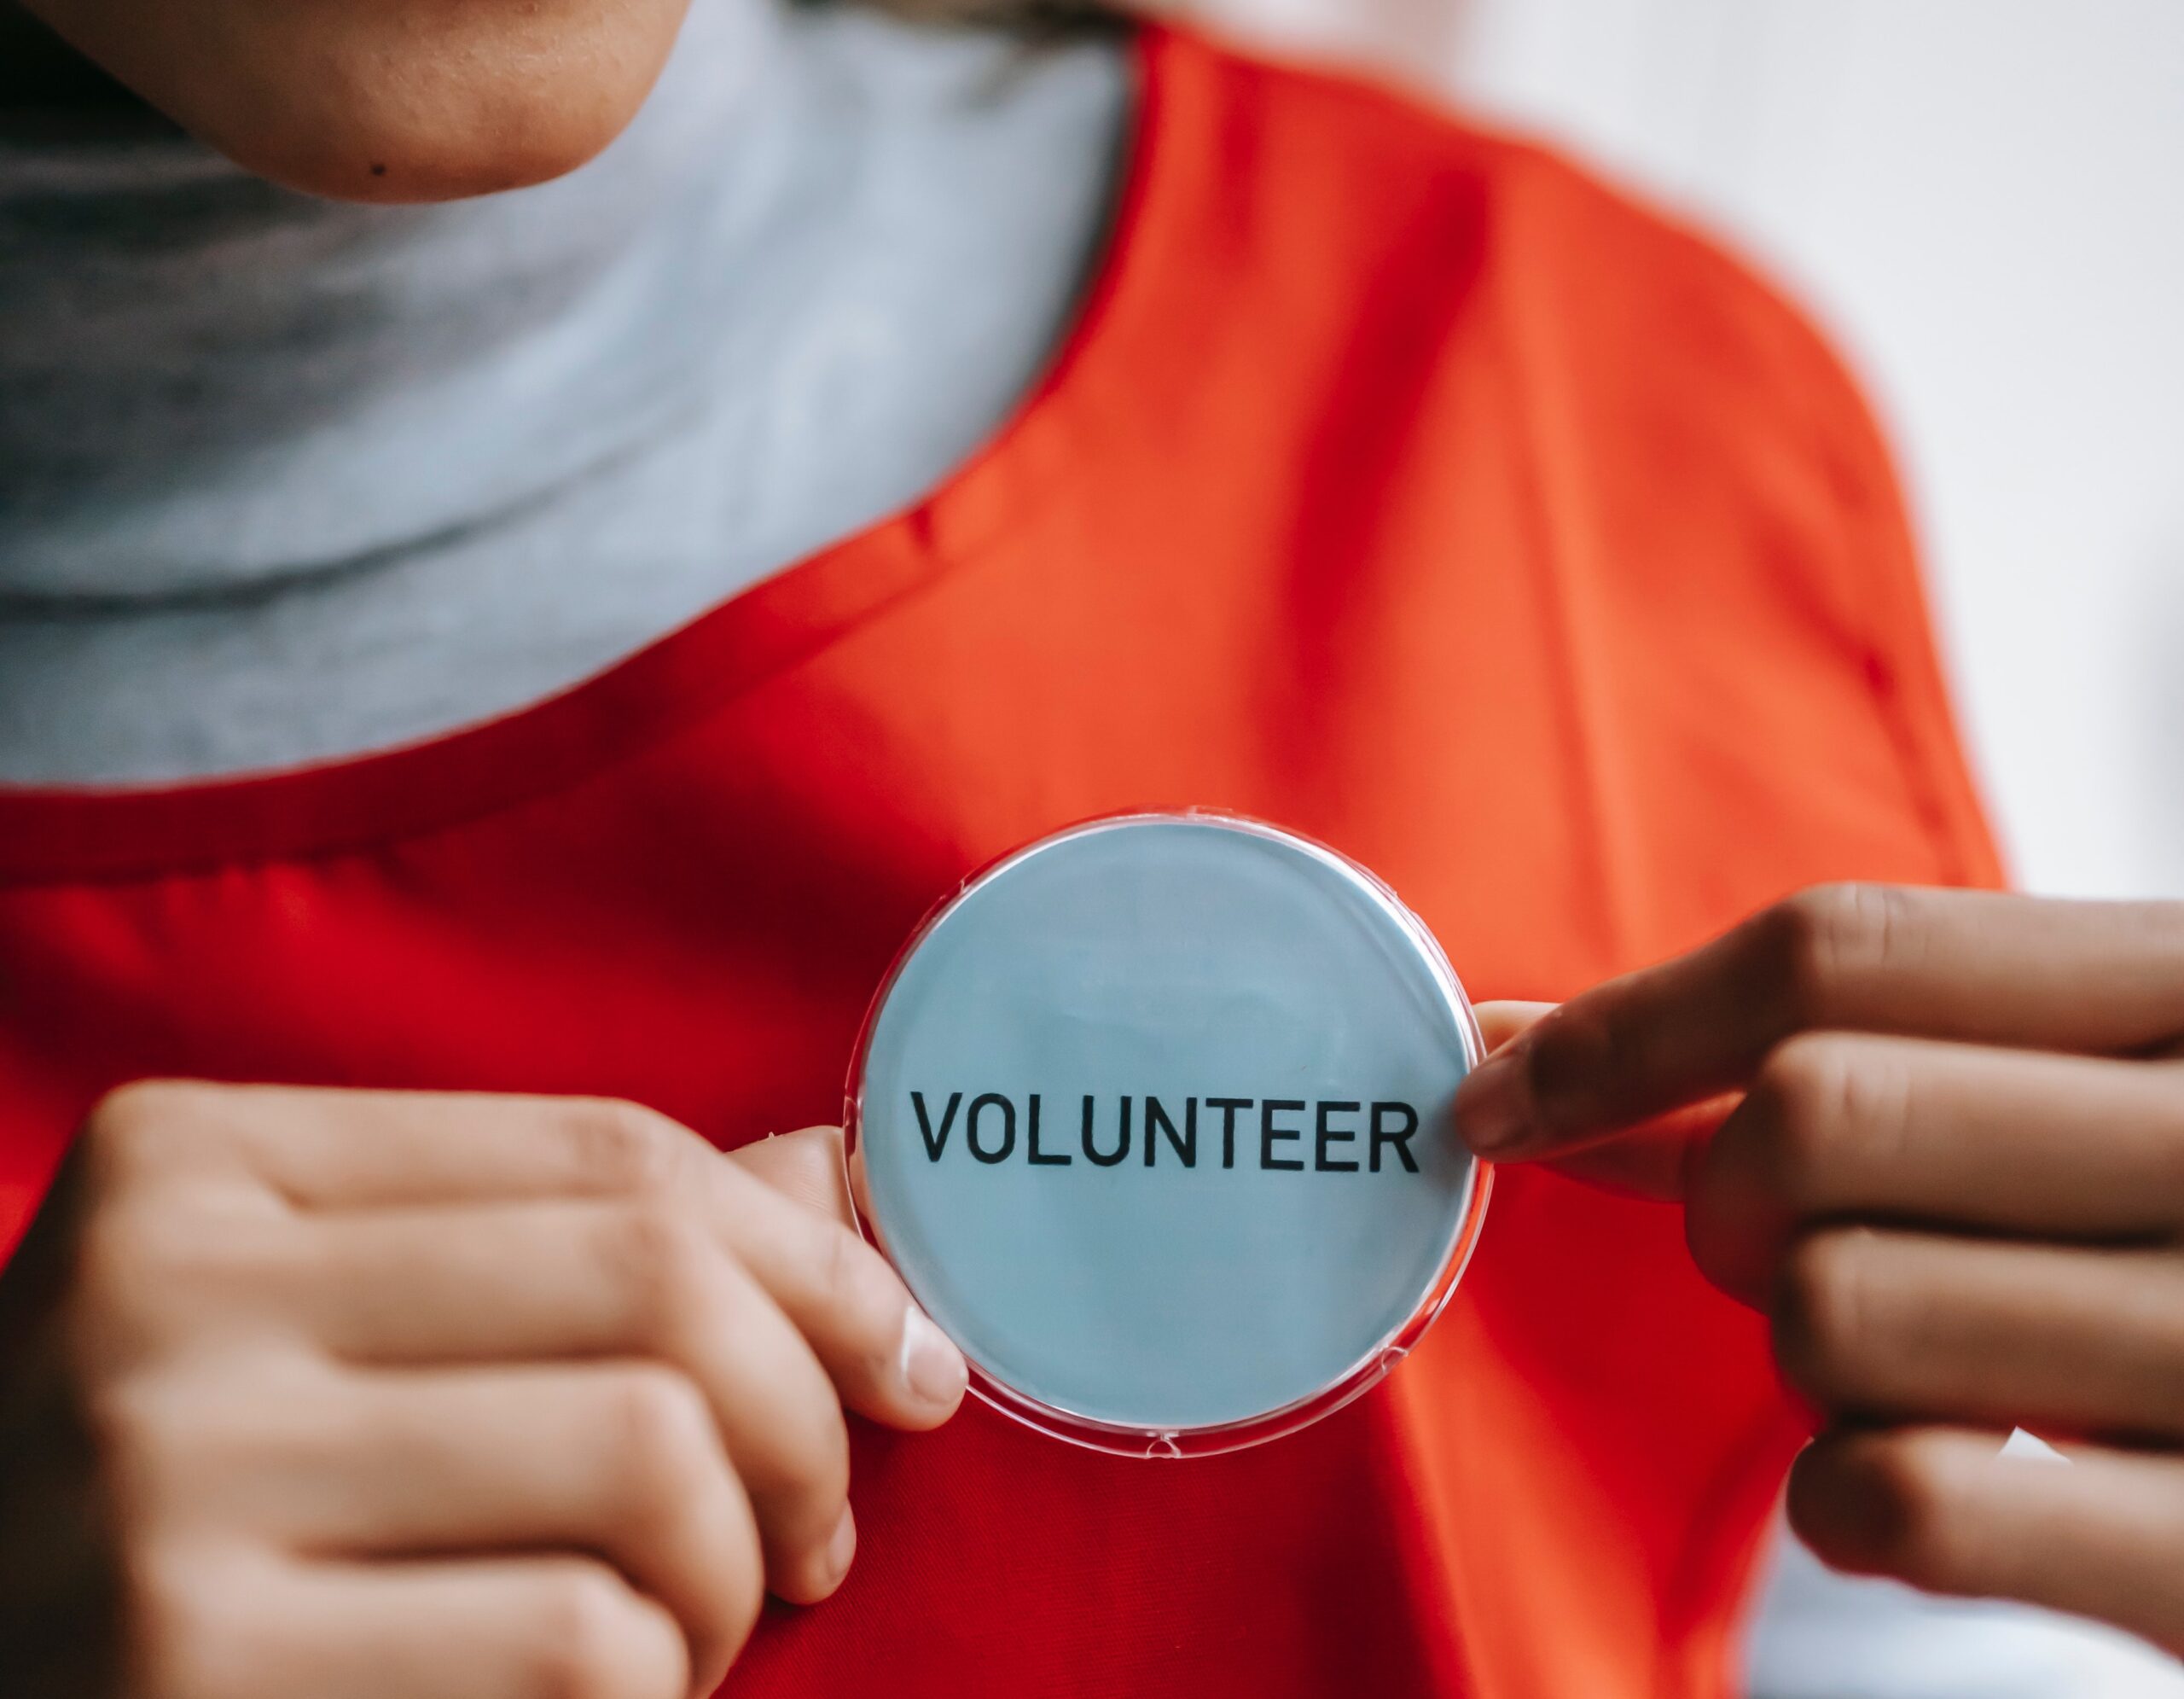 volunteering opportunities for students